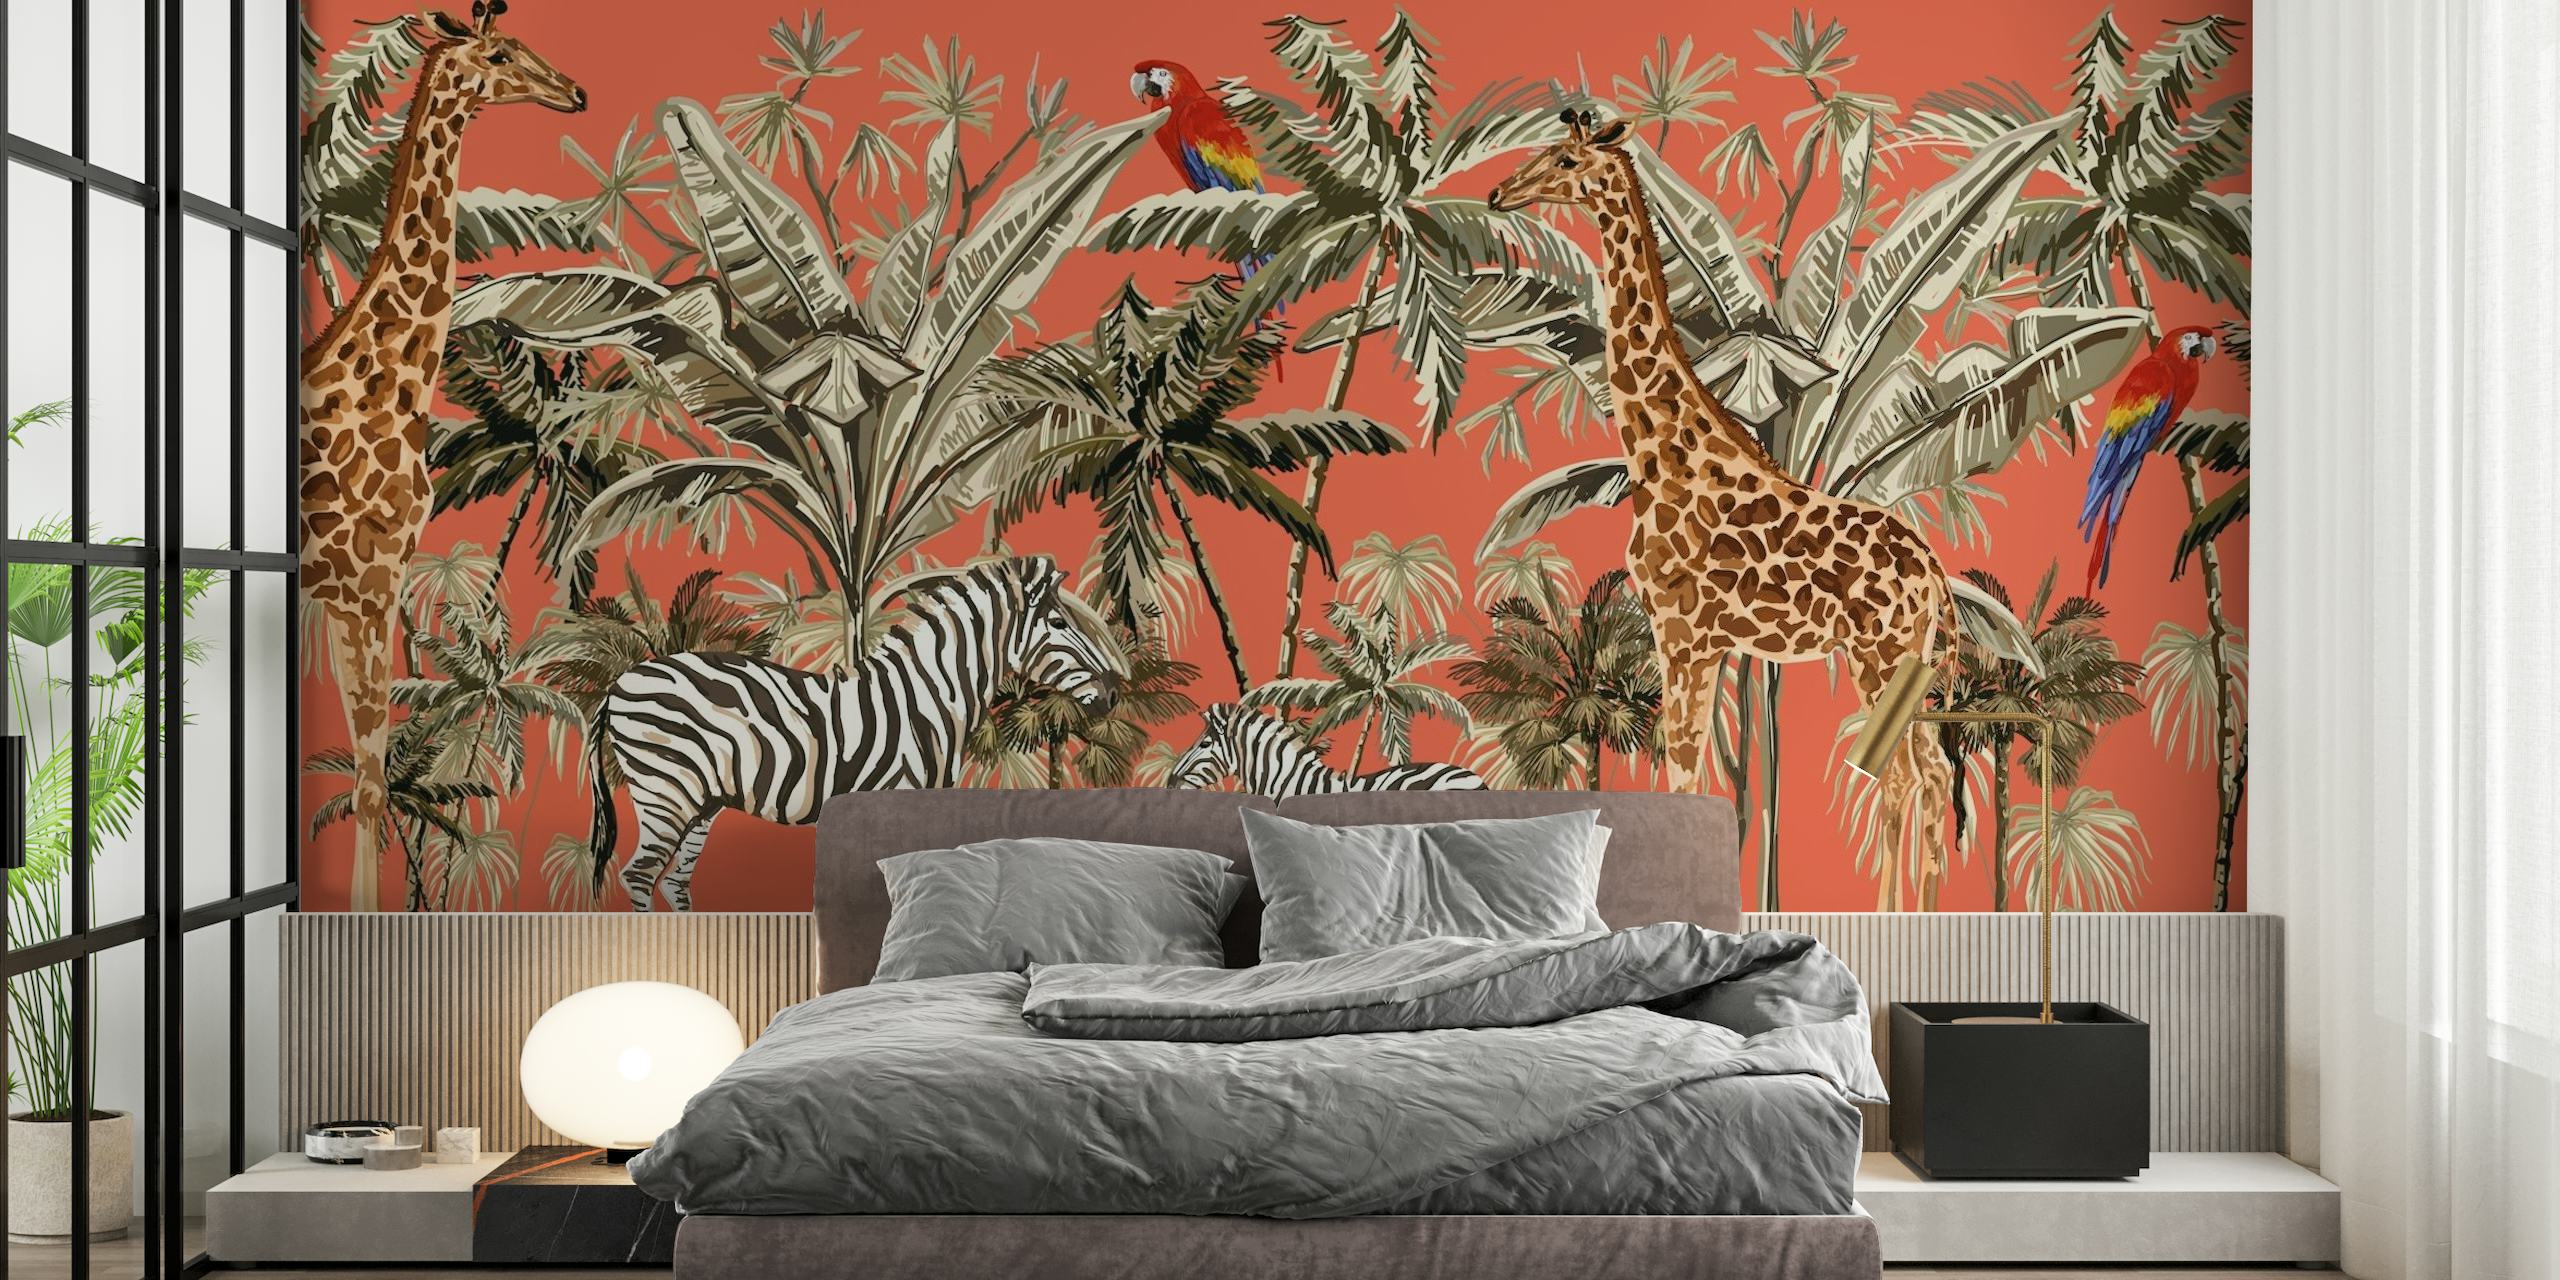 Safariinspirerad tapet med zebror, giraffer och fåglar på orange bakgrund